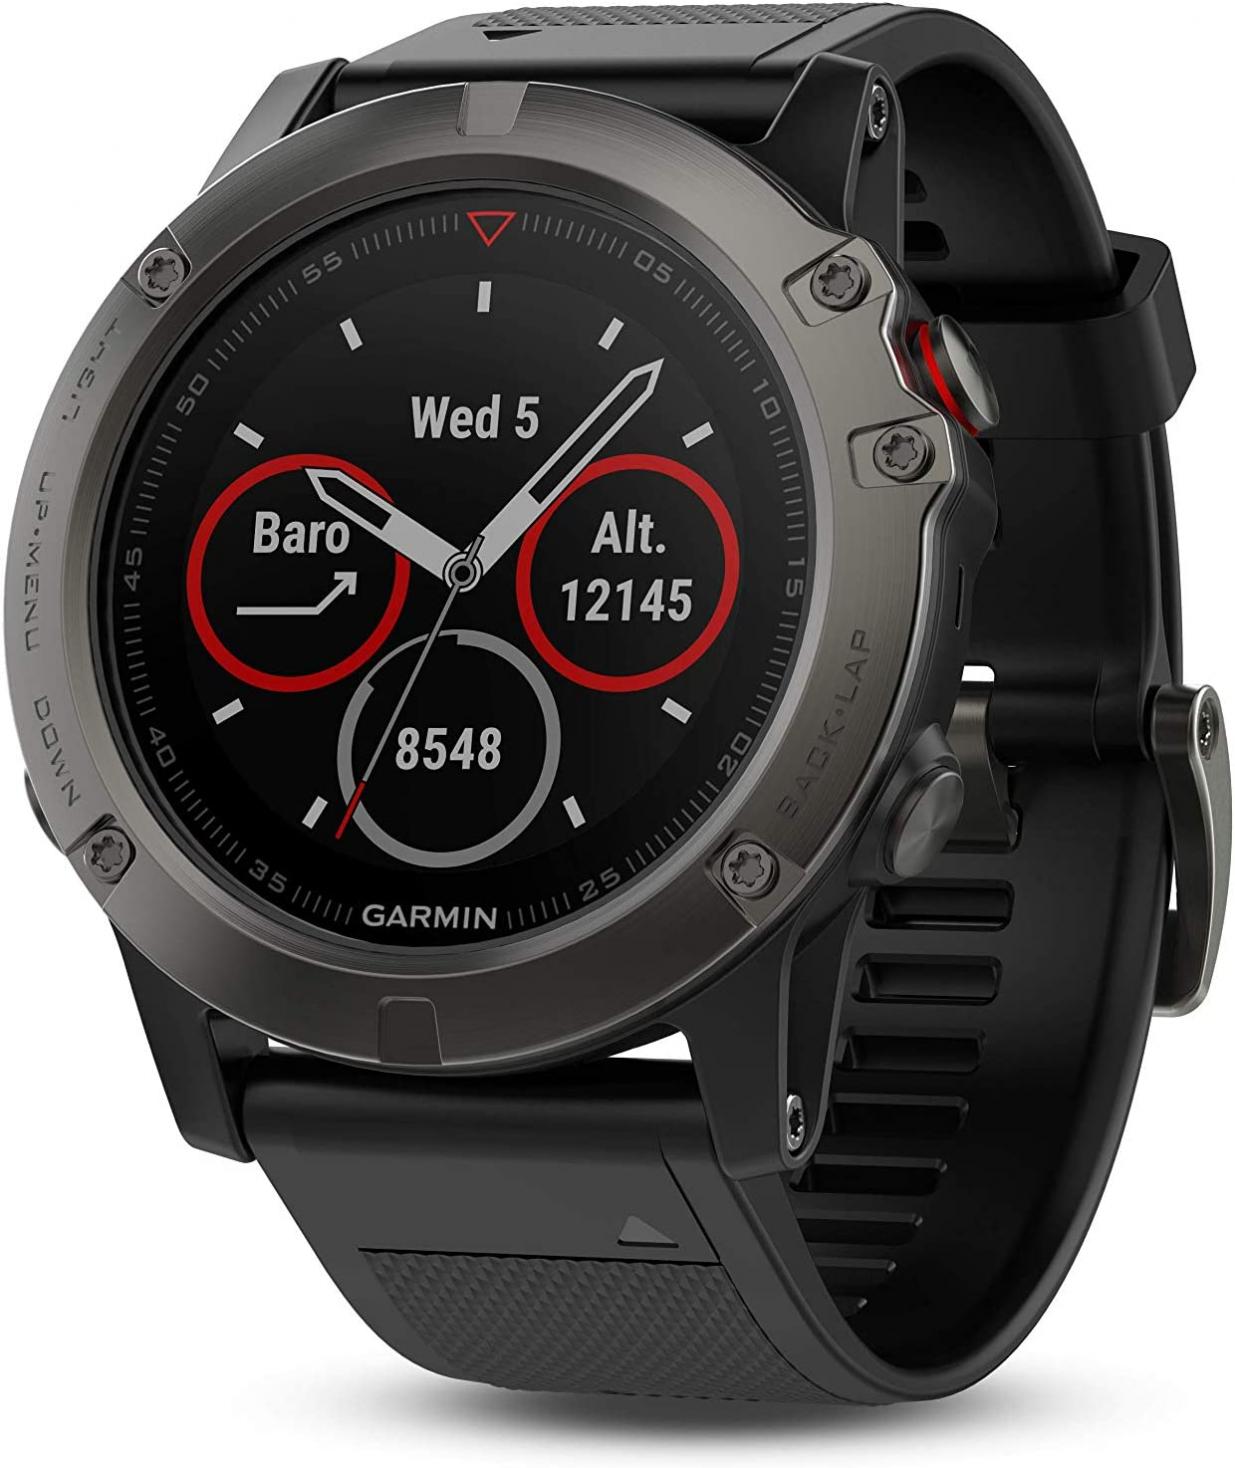 Garmin fenix 5X Sapphire GPS Watch - Slate Gray with Black Band (Renewed)